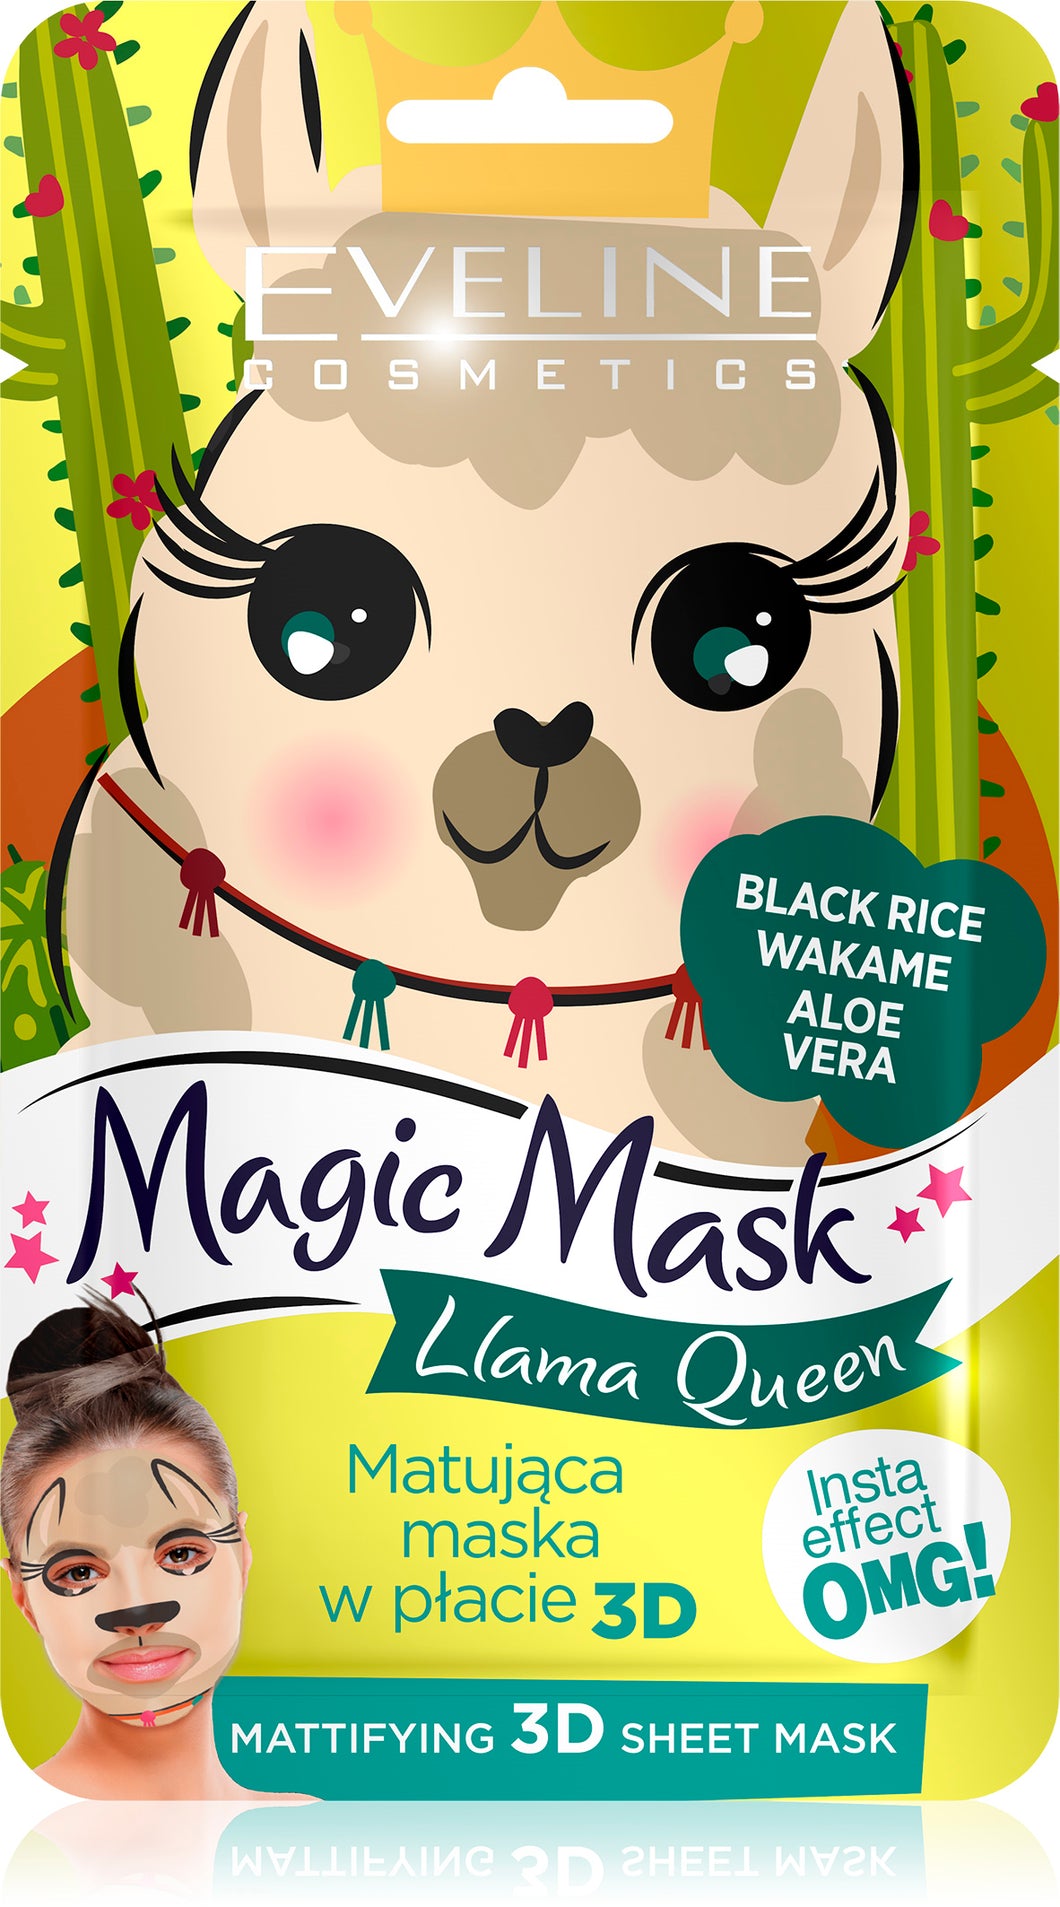 Magic Mask Lama Queen Mattifying 3D Sheet Mask